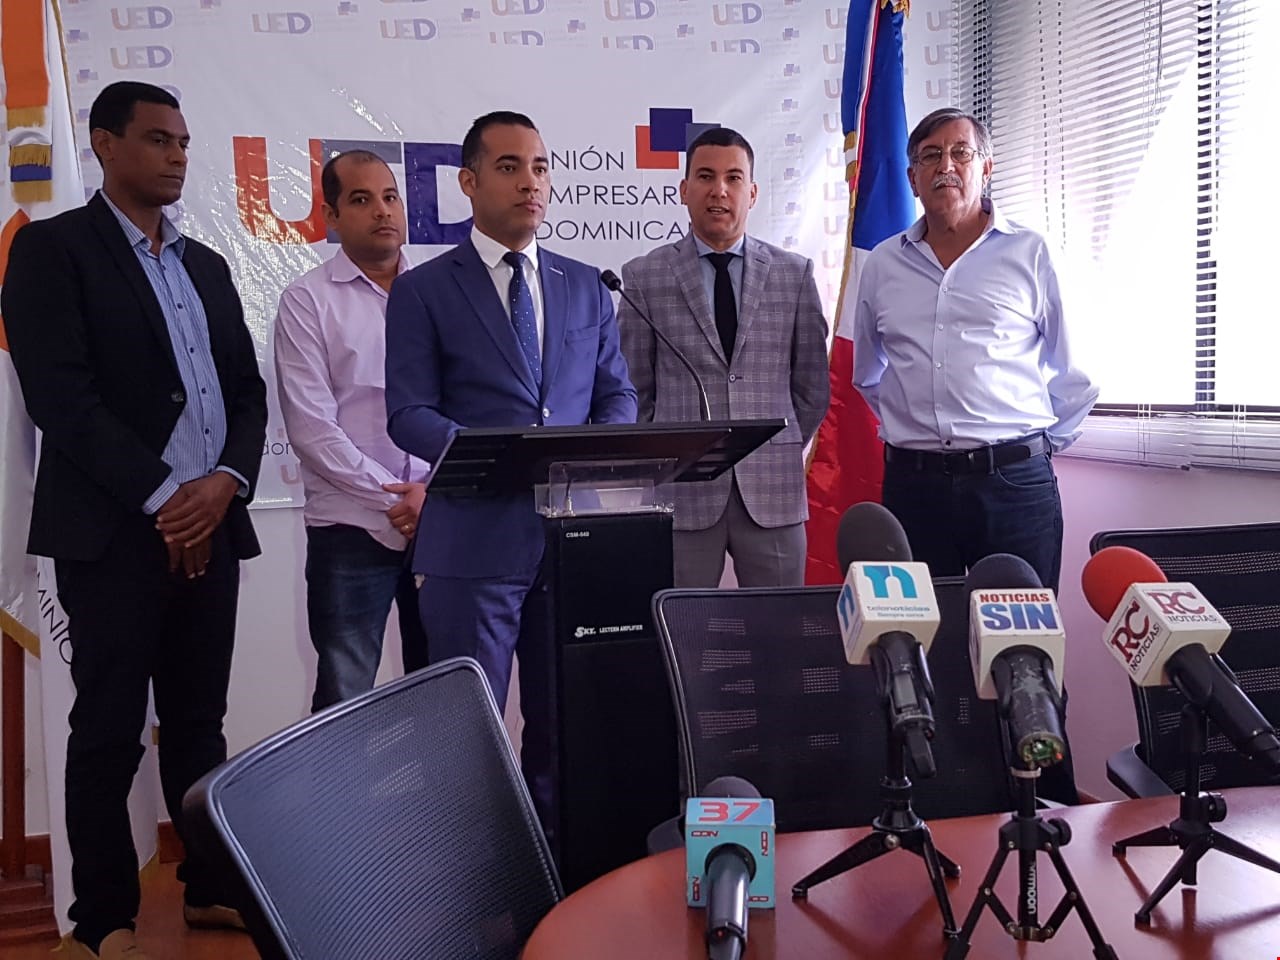 UED pone a disposición del Estado Dominicano 2500 camiones volteo para contrarrestar paro convocado por FENATRADO